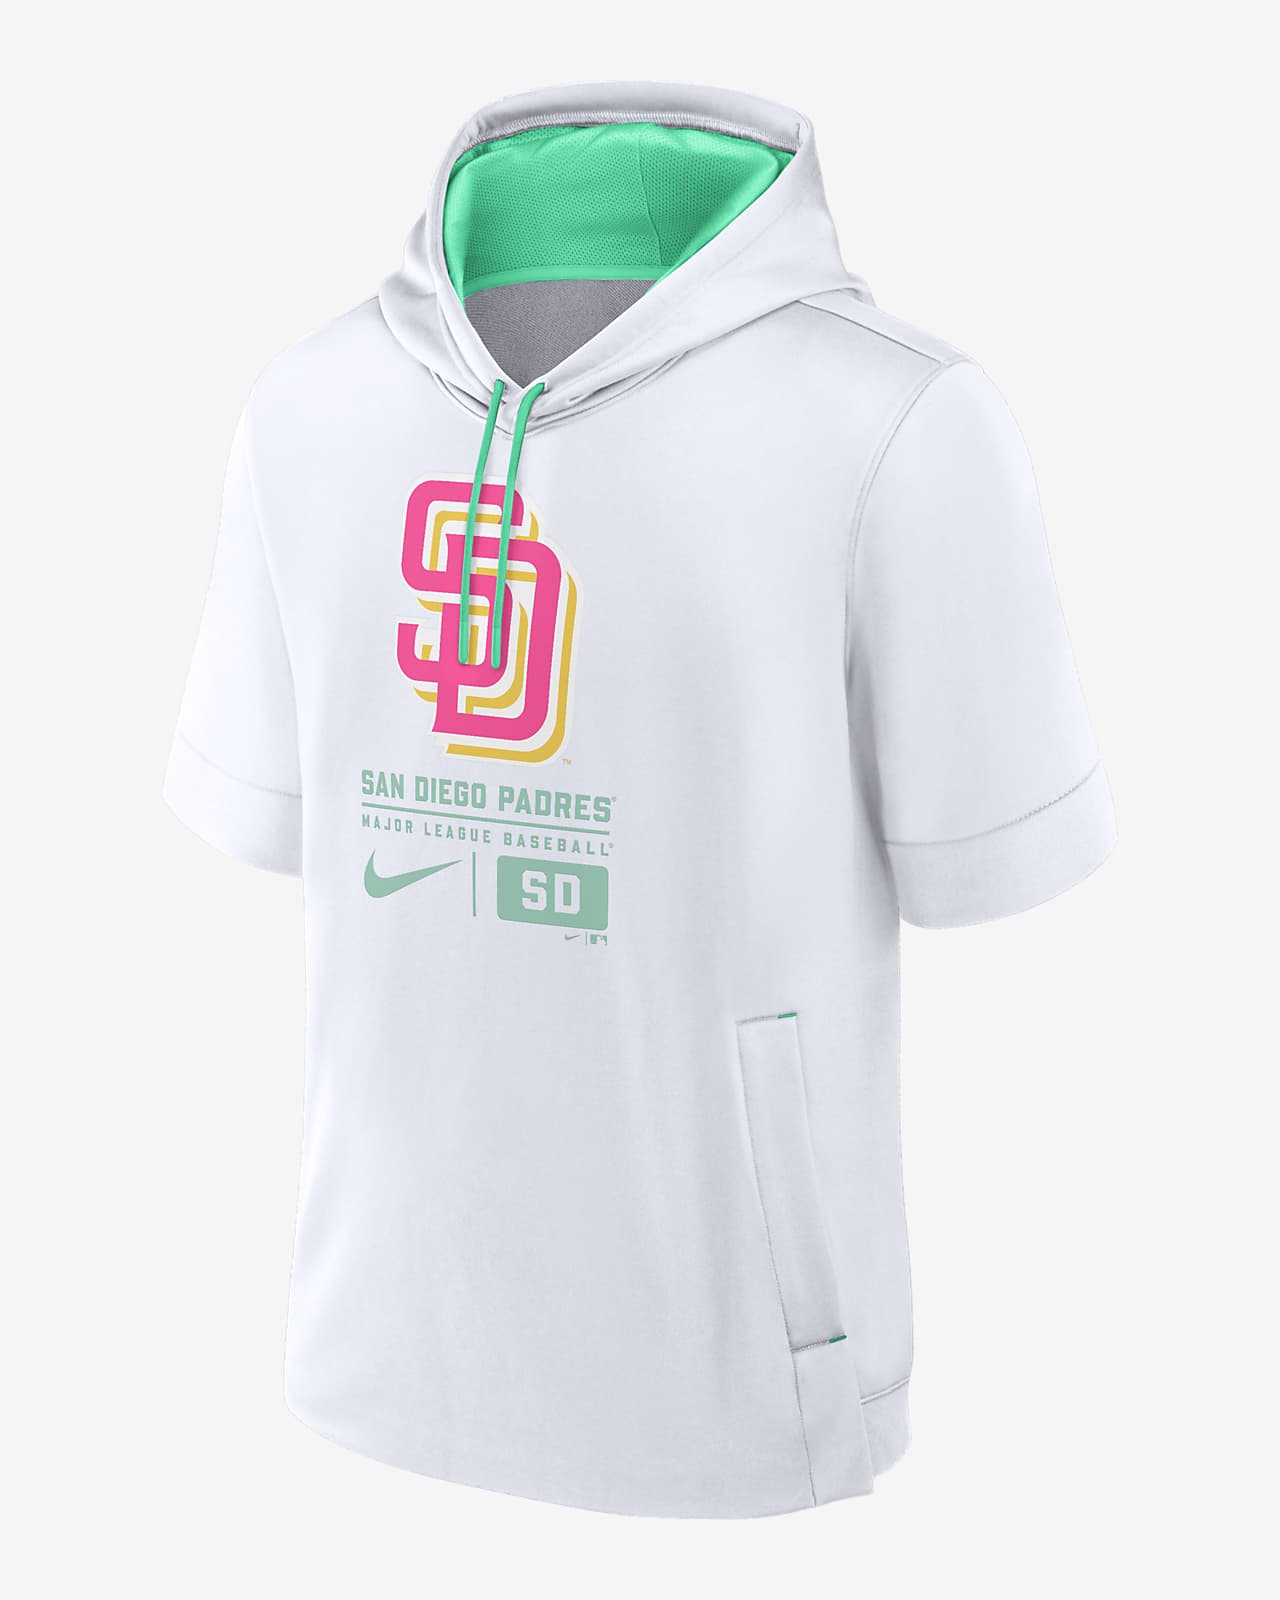 Sudadera con gorro sin cierre de manga corta Nike de la MLB para hombre San Diego Padres City Connect